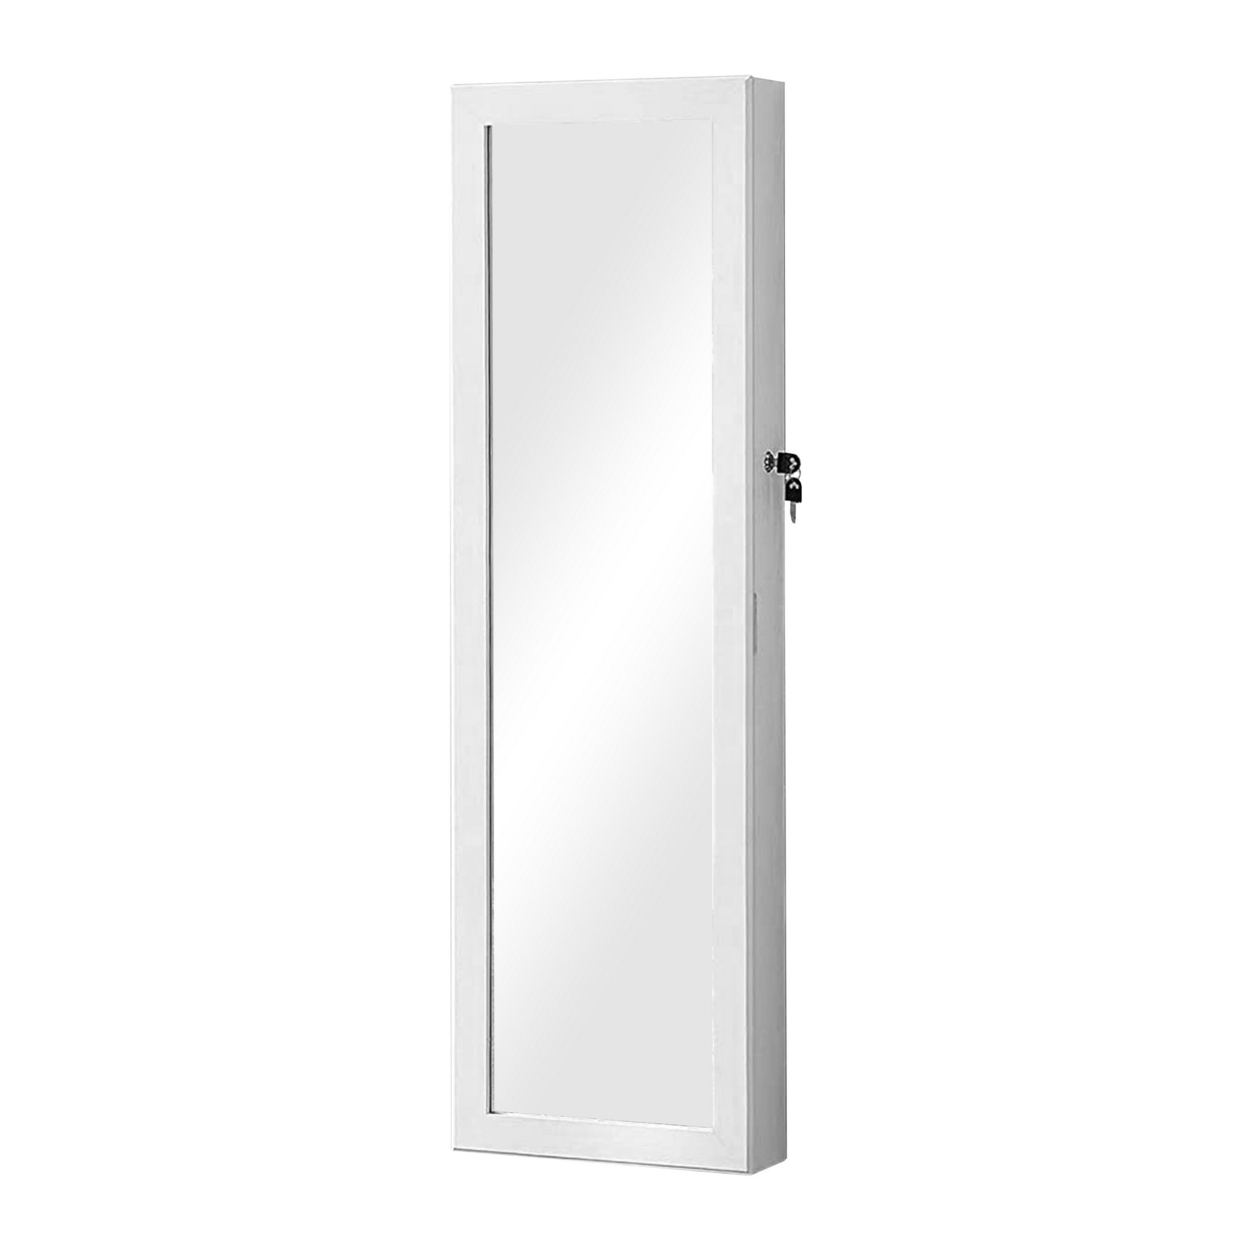 Max 47 Inch Wood Jewelry Cabinet, Mirrored Door, LED Lights, White- Saltoro Sherpi